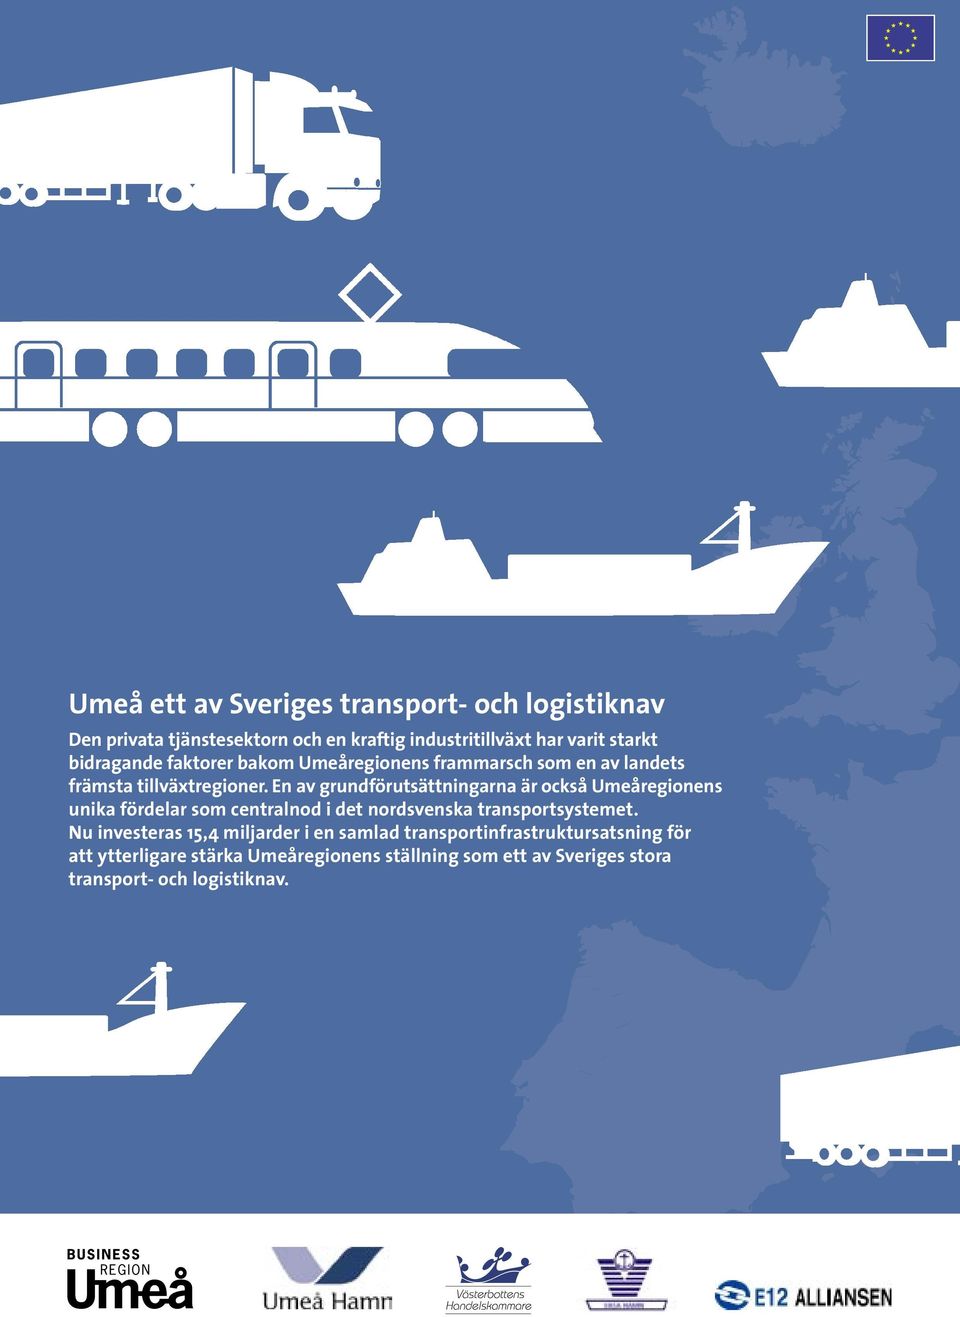 En av grundförutsättningarna är också Umeåregionens unika fördelar som centralnod i det nordsvenska transportsystemet.